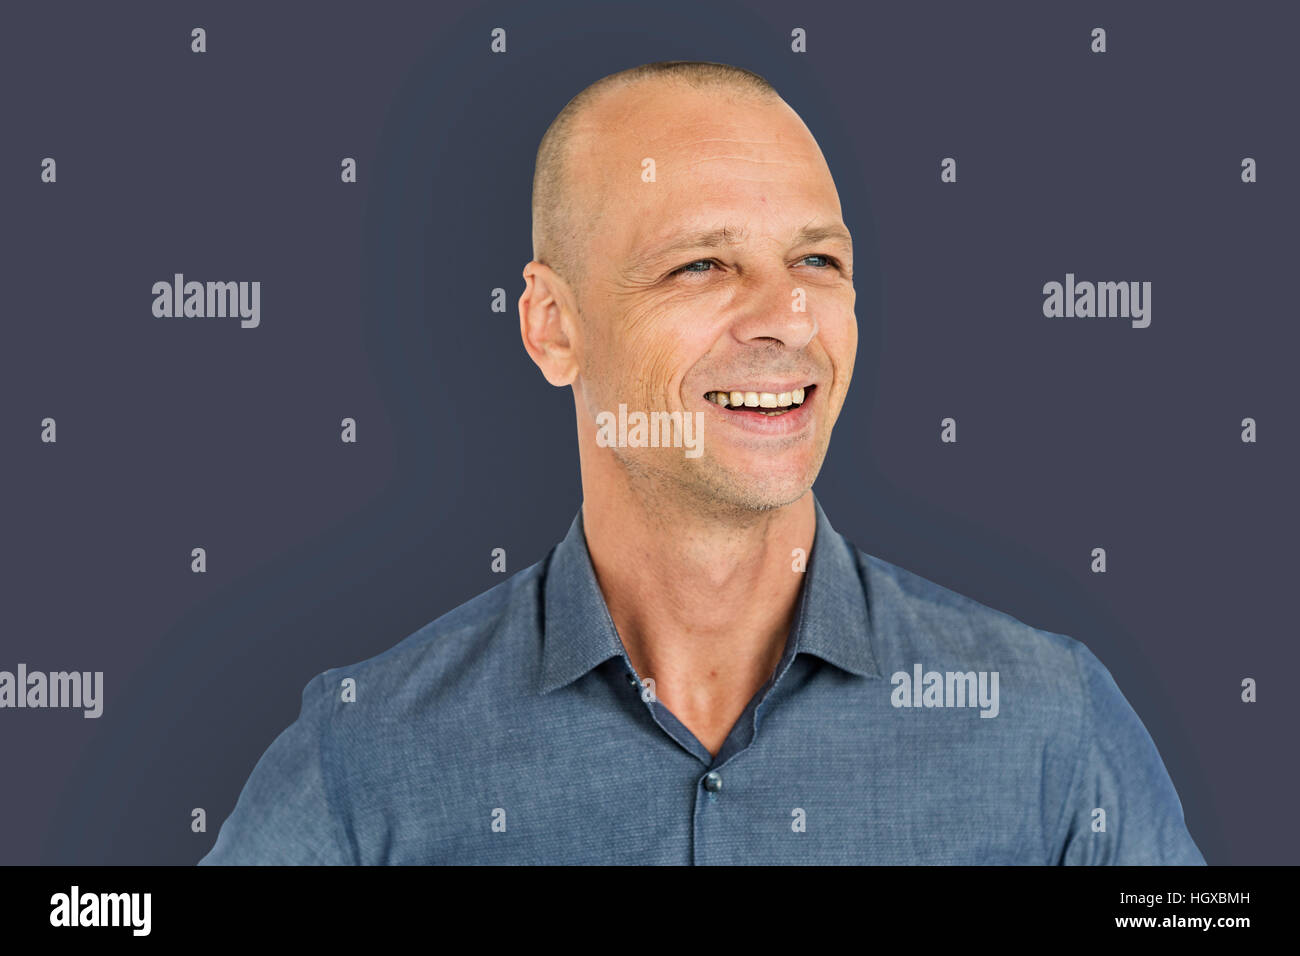 Mann lächelnd Glück Porträt Konzept Stockfoto